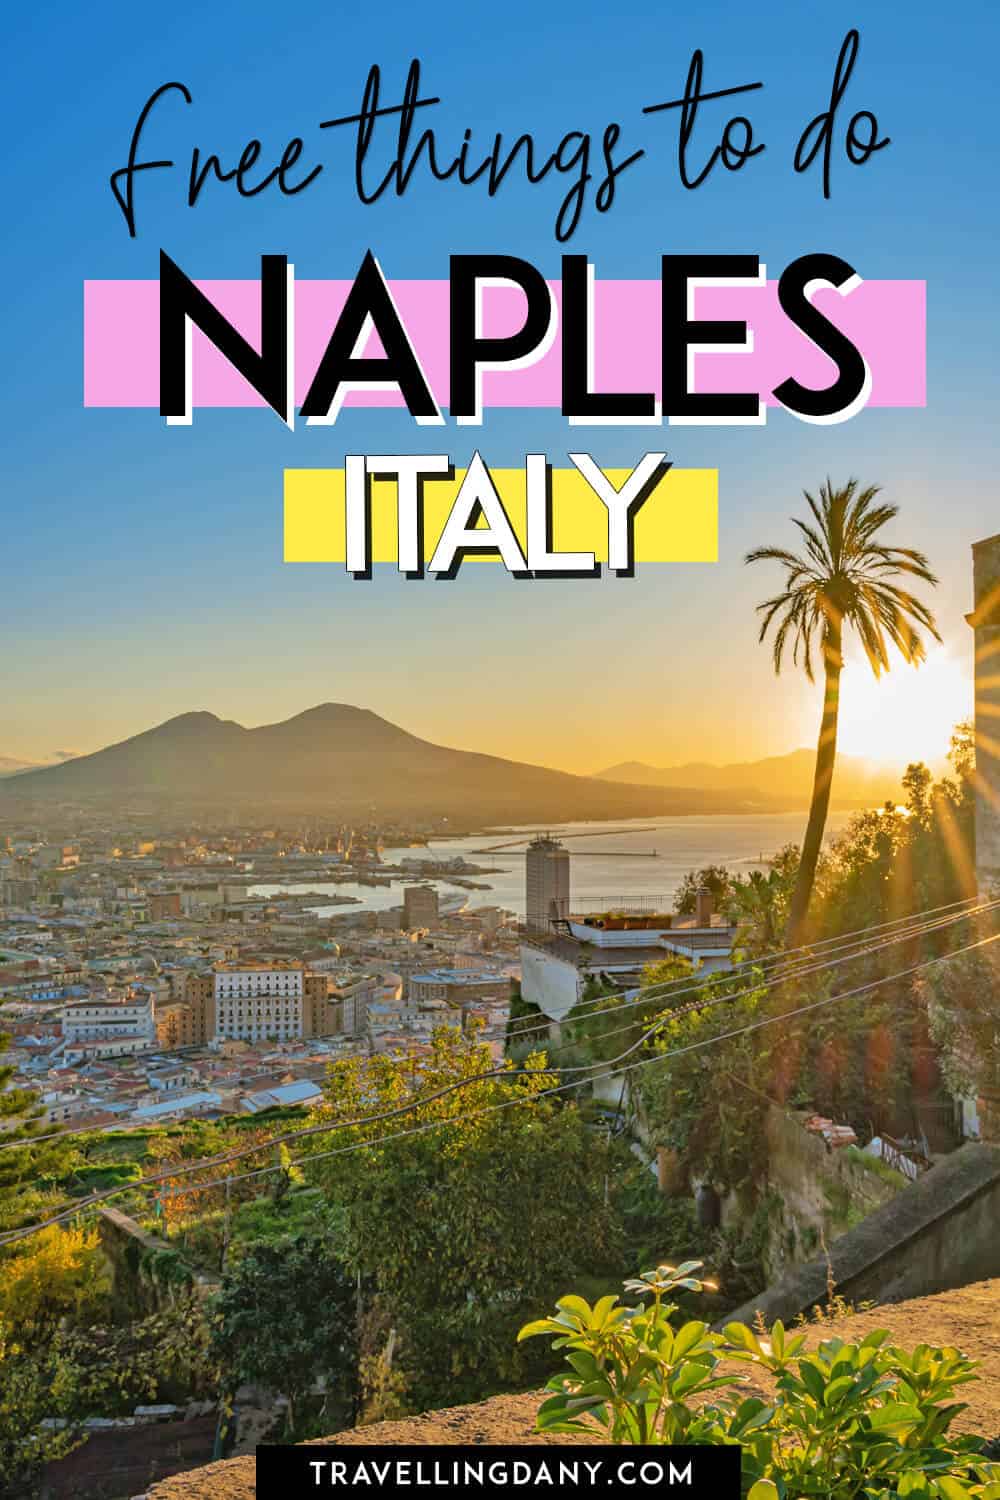 Le migliori cose da fare a Napoli gratis per un viaggio economico, senza rinunciare al divertimento! Scoprile con una del posto!